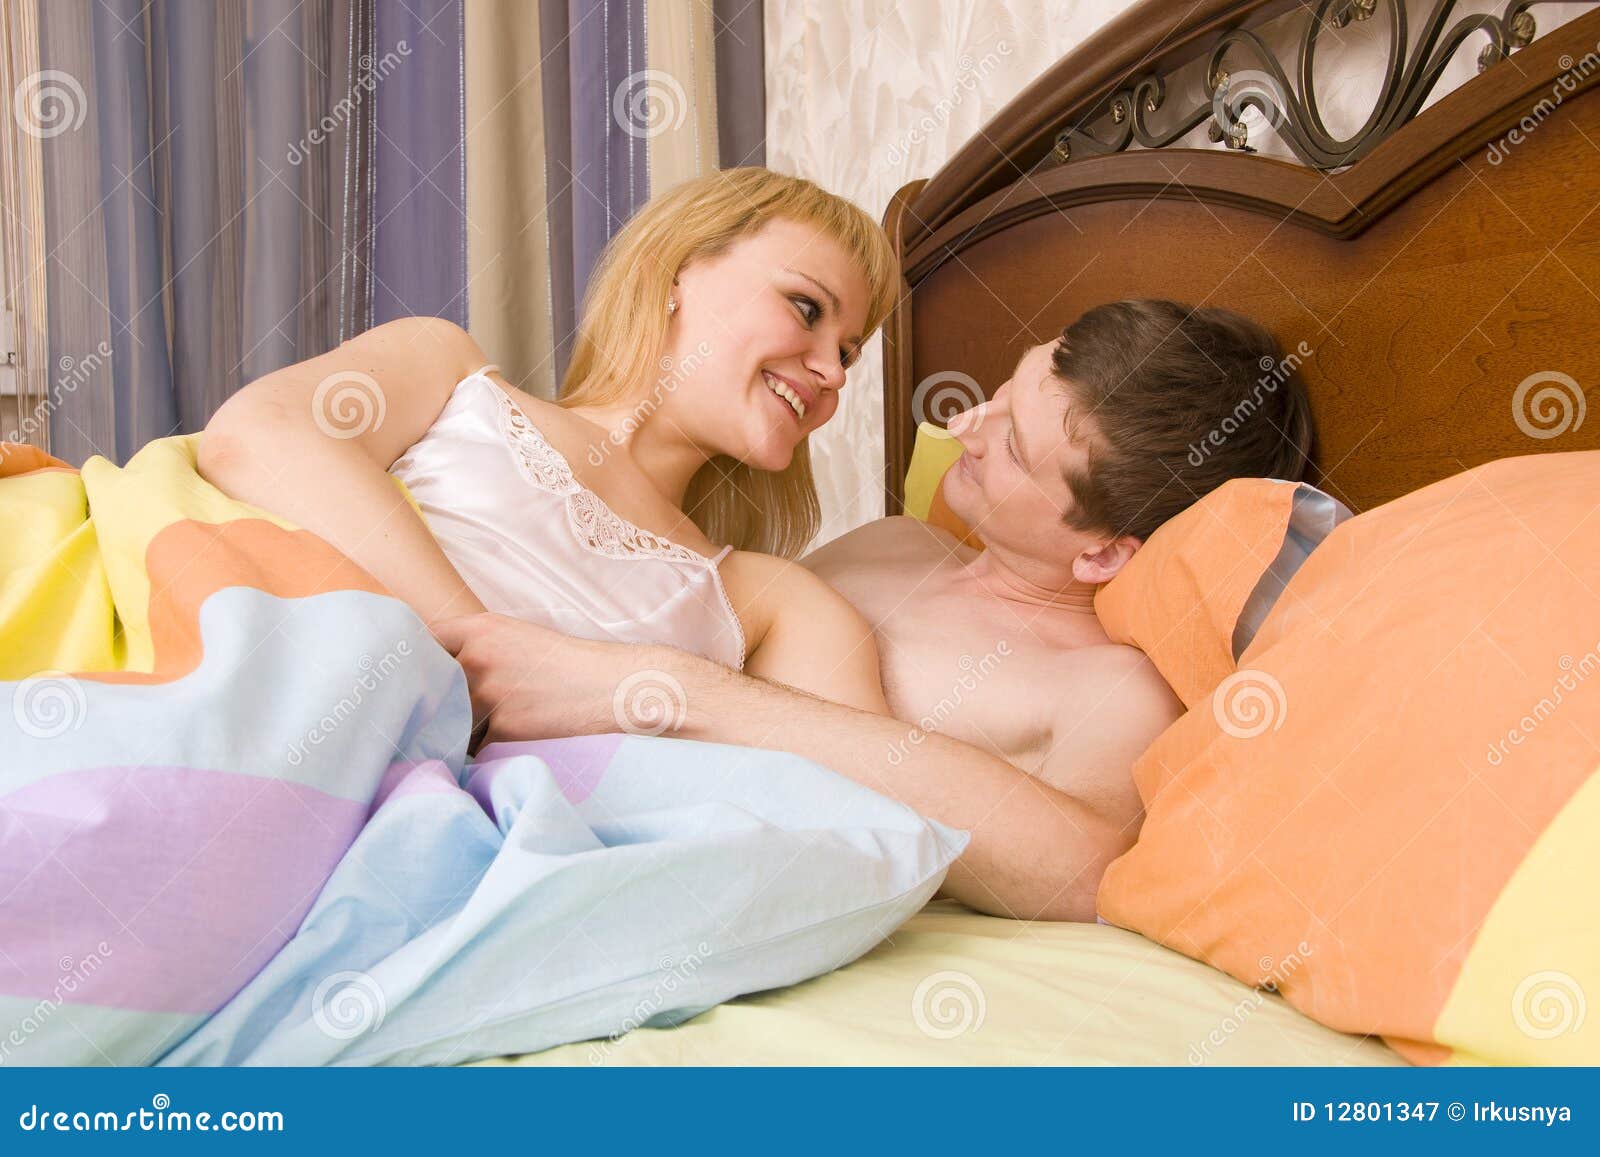 с мамой спят в одной постели эротика фото 16